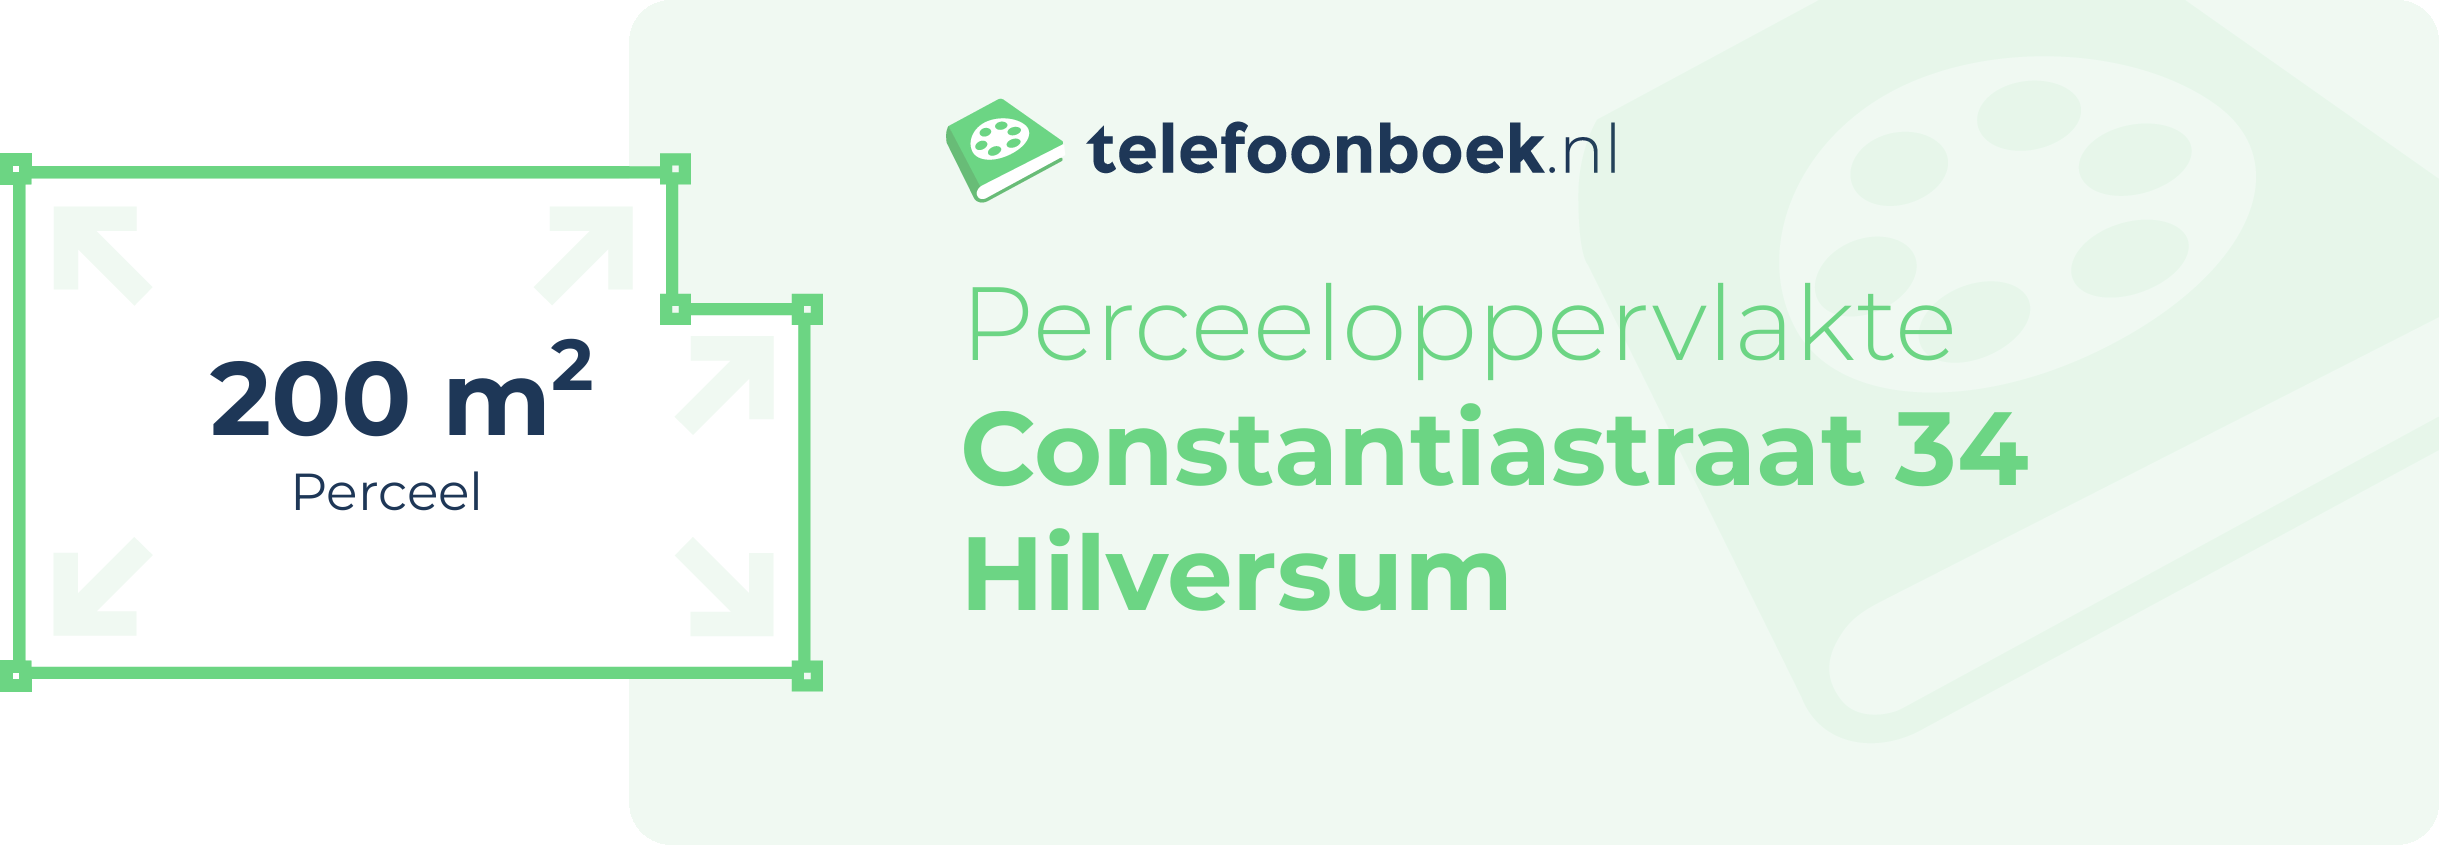 Perceeloppervlakte Constantiastraat 34 Hilversum